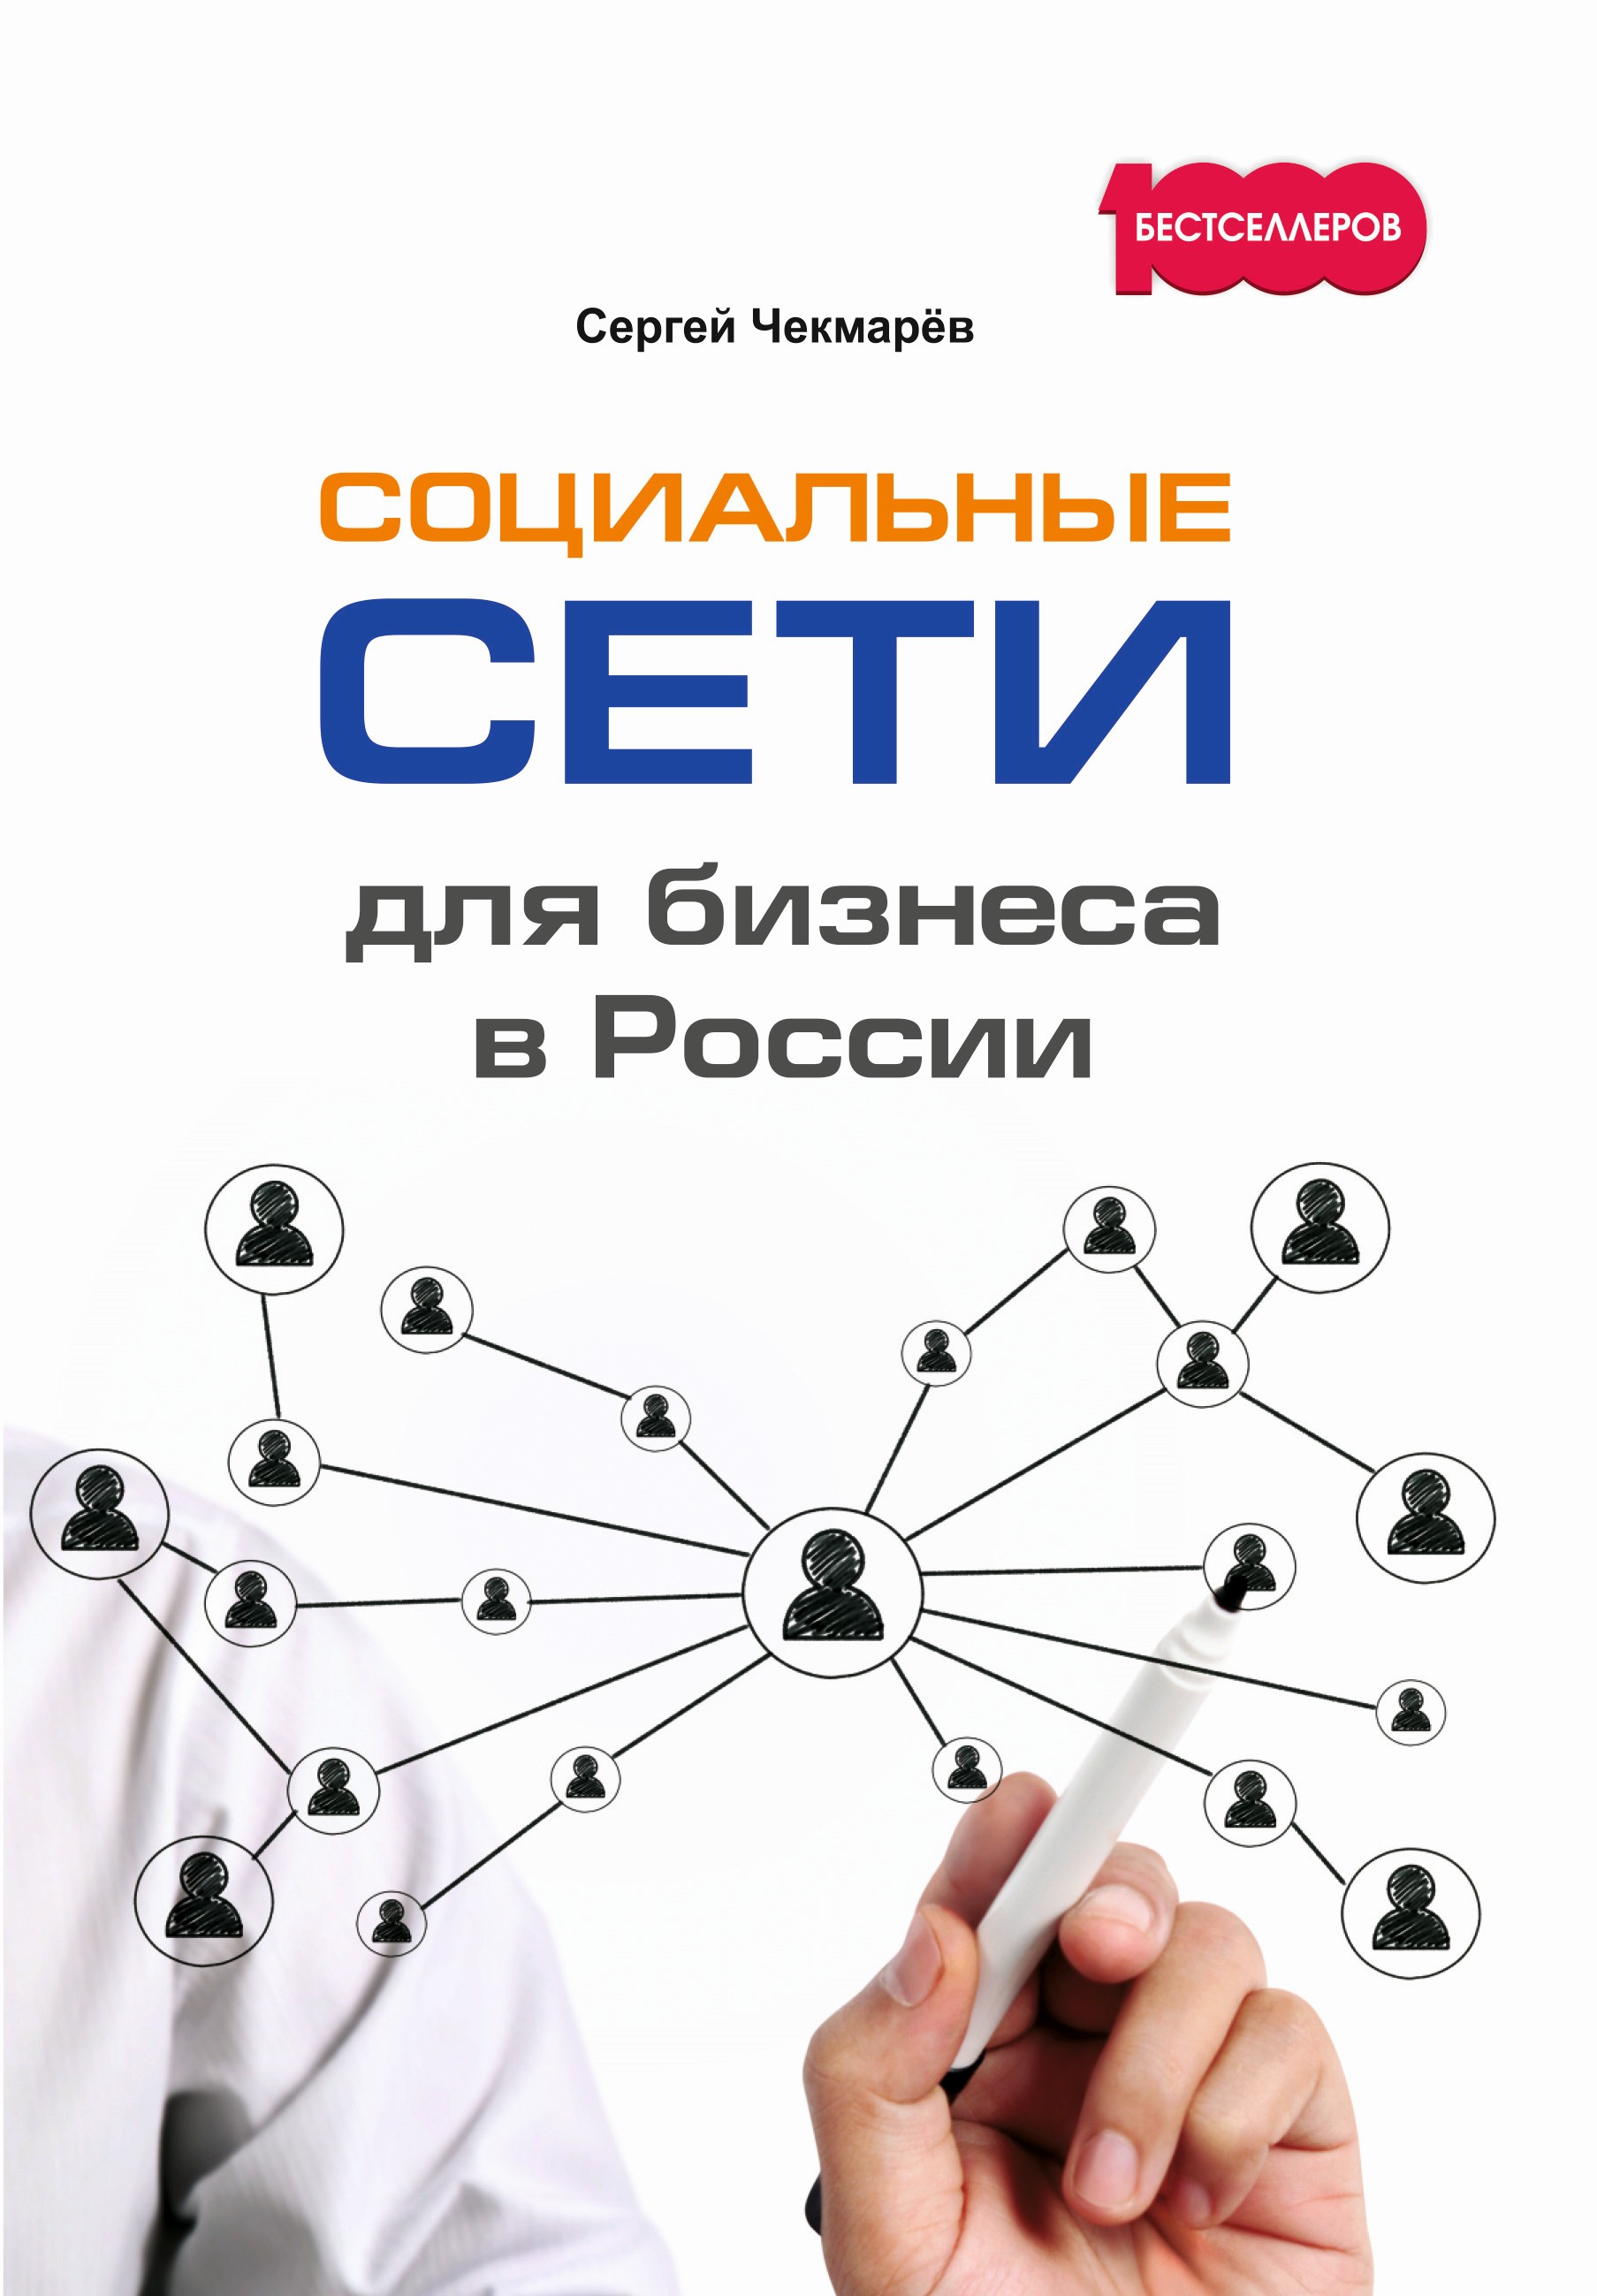 Книга Социальные сети для бизнеса в России из серии , созданная Сергей Чекмарёв, может относится к жанру Маркетинг, PR, реклама. Стоимость электронной книги Социальные сети для бизнеса в России с идентификатором 28068668 составляет 176.00 руб.